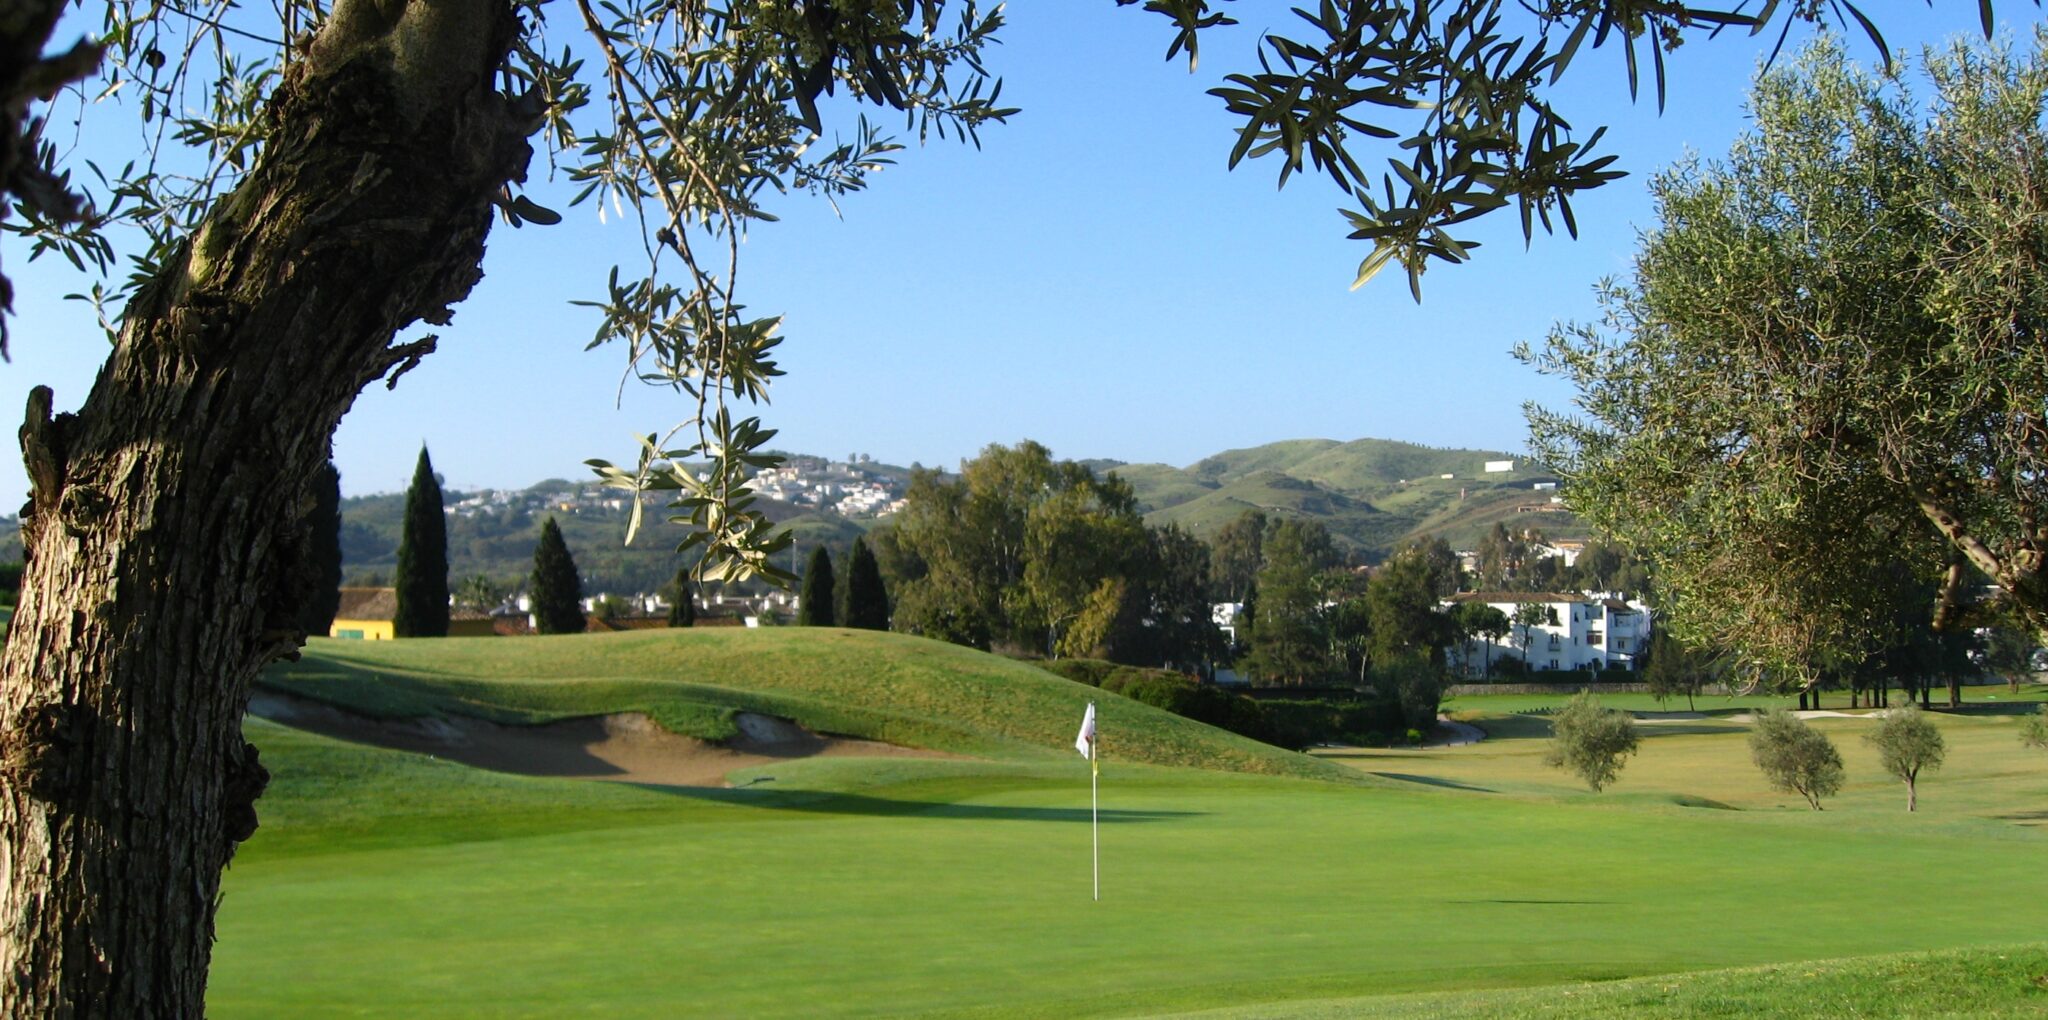 Enjoy your golf break at Mijas Los Olivos Golf